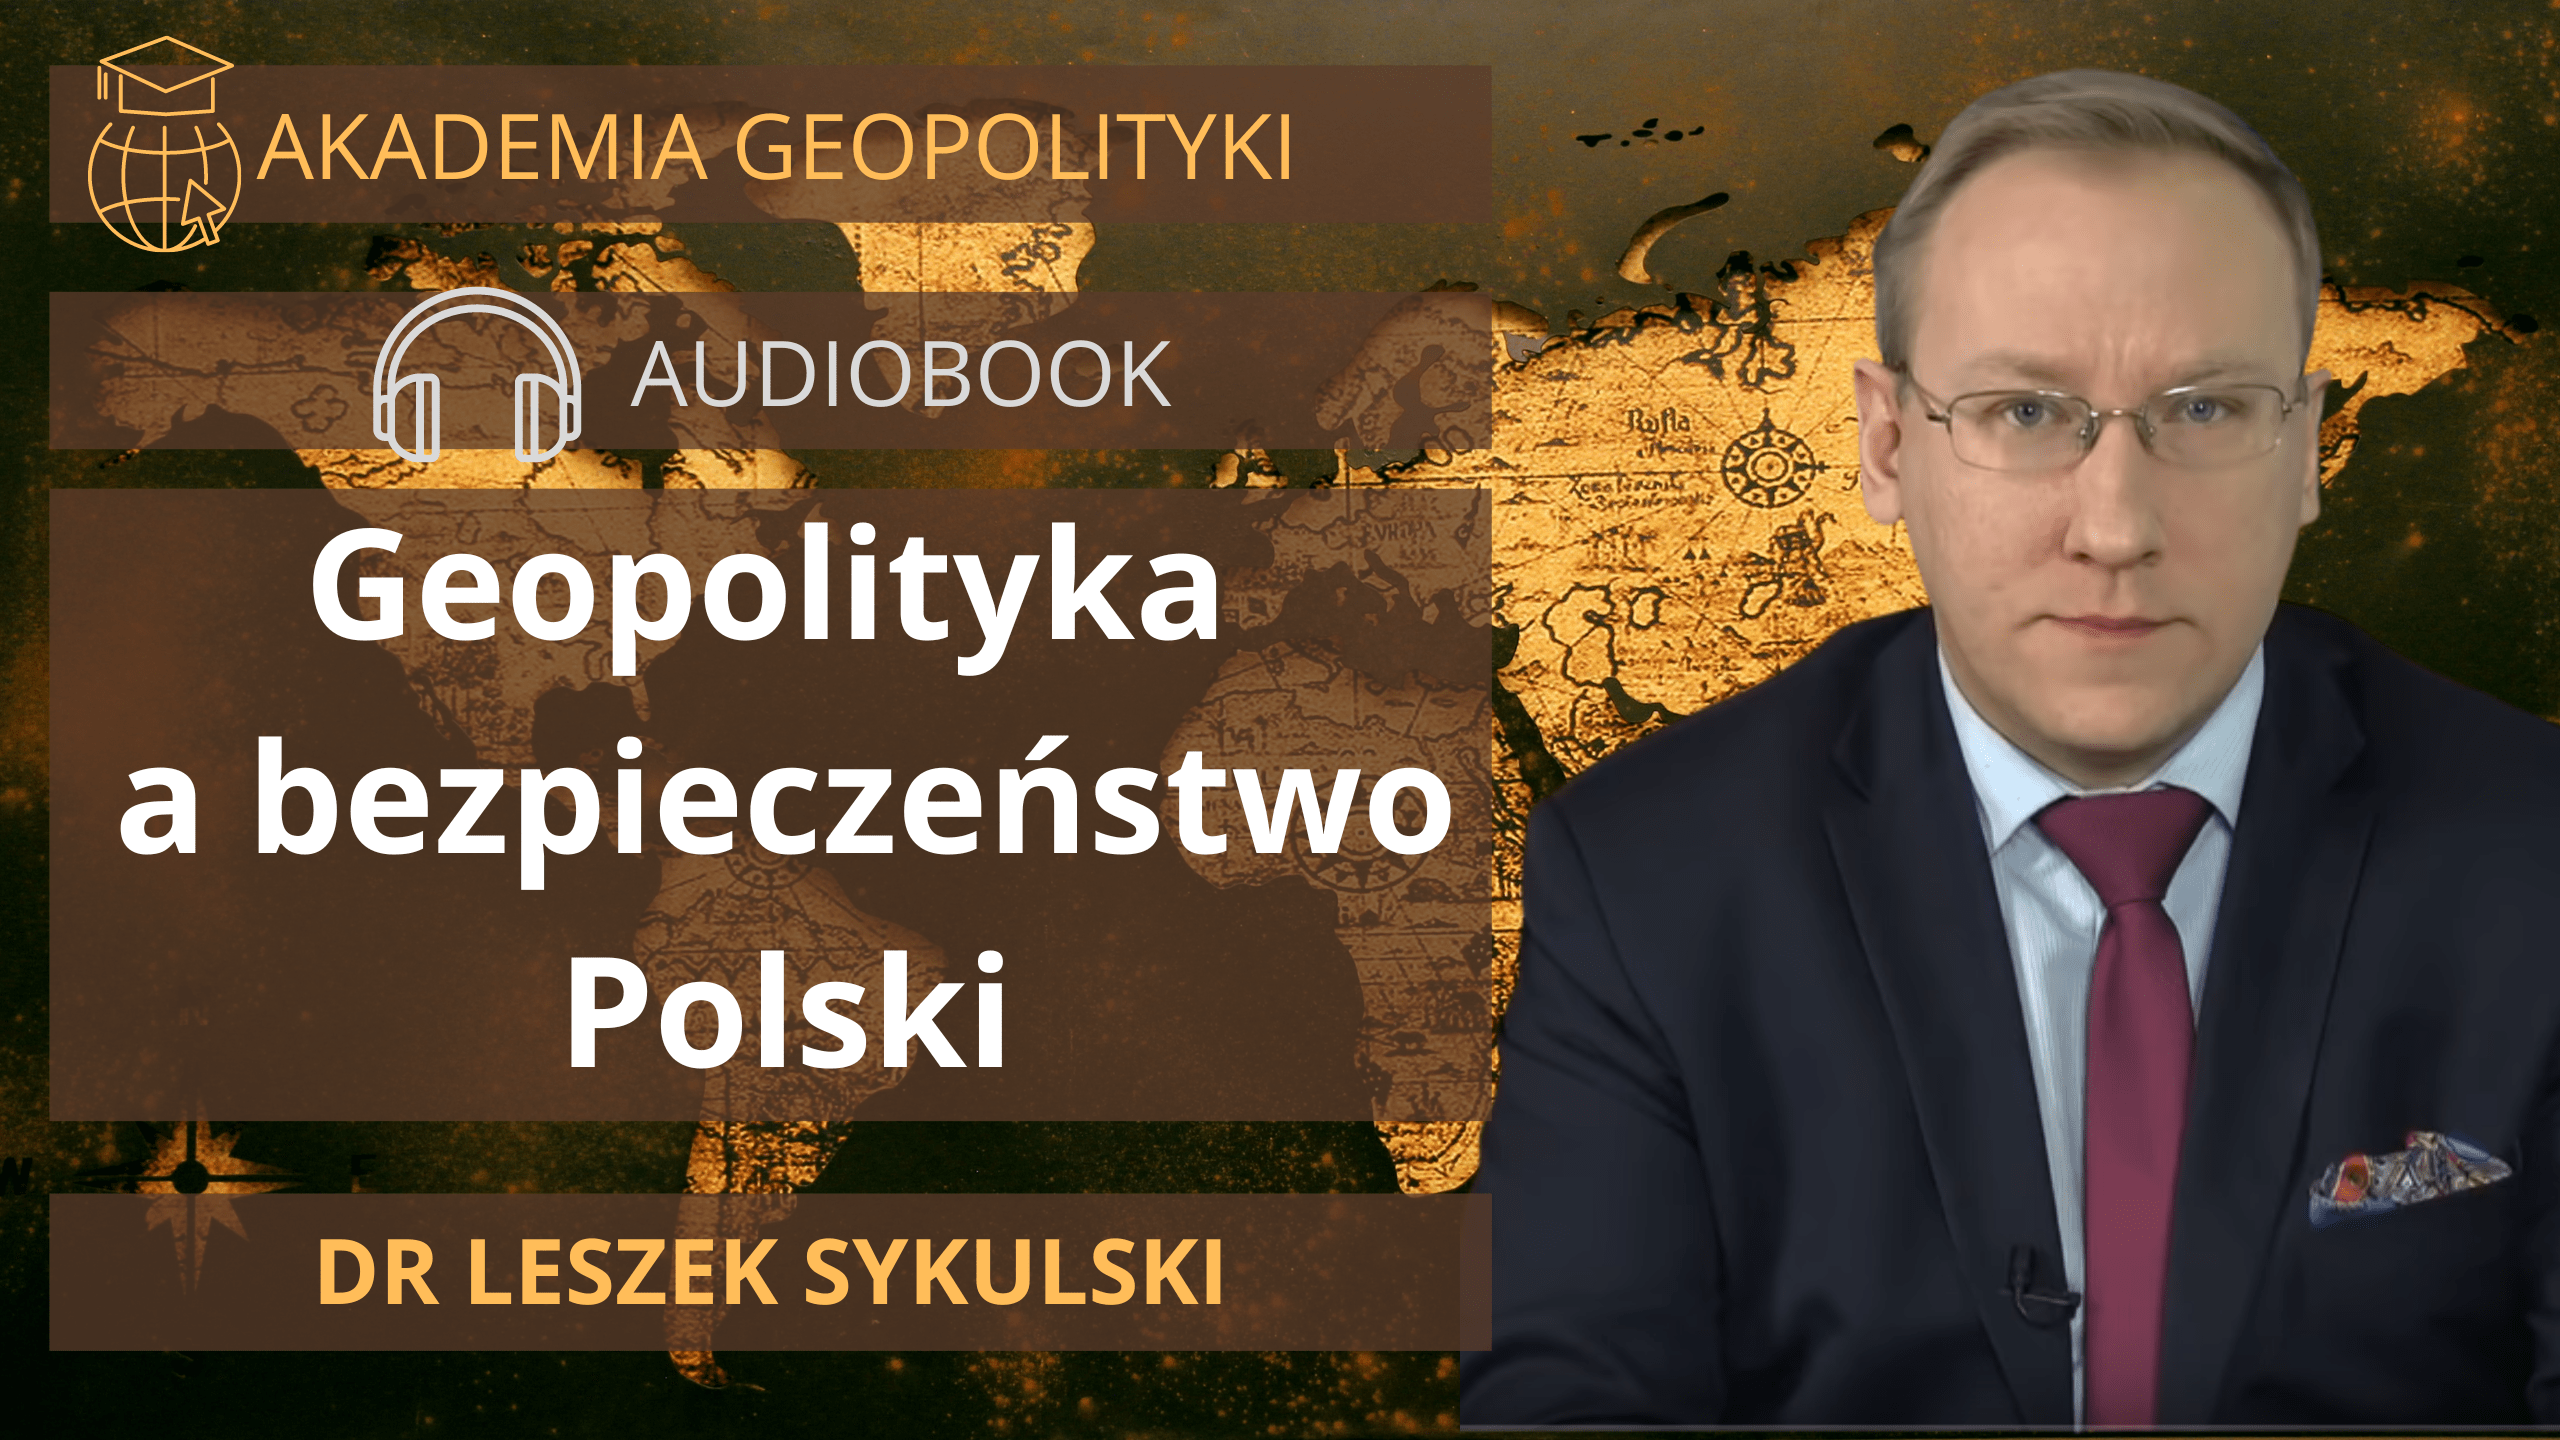 Audiobook: Leszek Sykulski, Geopolityka a bezpieczeństwo Polski | dr Leszek Sykulski